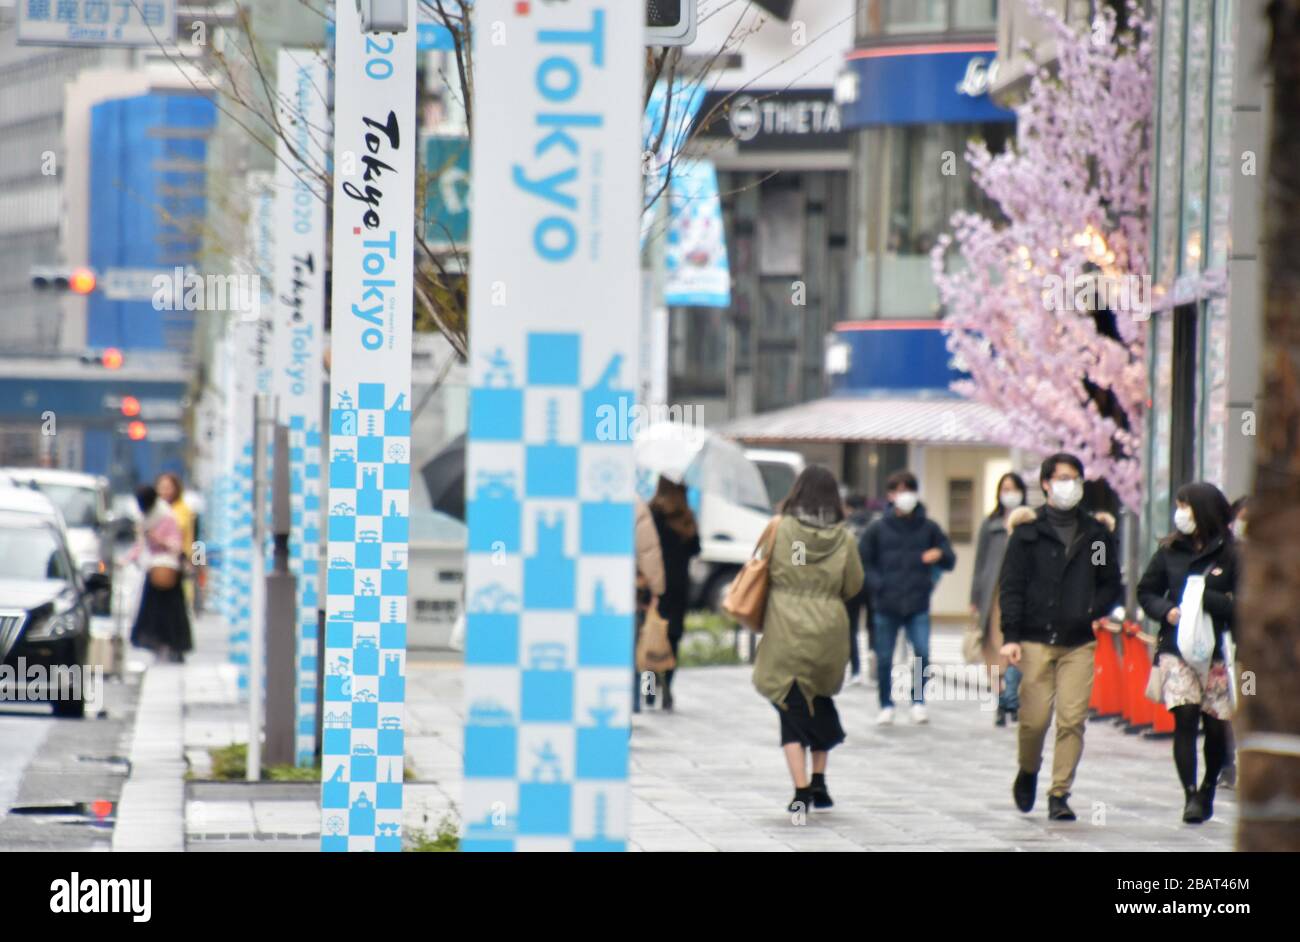 Tokio, Japón. 29 de marzo de 2020. Los peatones que usan máscaras faciales caminan en el distrito comercial de Ginza en Tokio, Japón el domingo 29 de marzo de 2020. Las calles de las zonas de Tokio, normalmente ocupadas, como el distrito comercial Shibuya, Shinjuku y Ginza, no son frecuentadas. Foto de Keizo Mori/UPI crédito: UPI/Alamy Live News Foto de stock